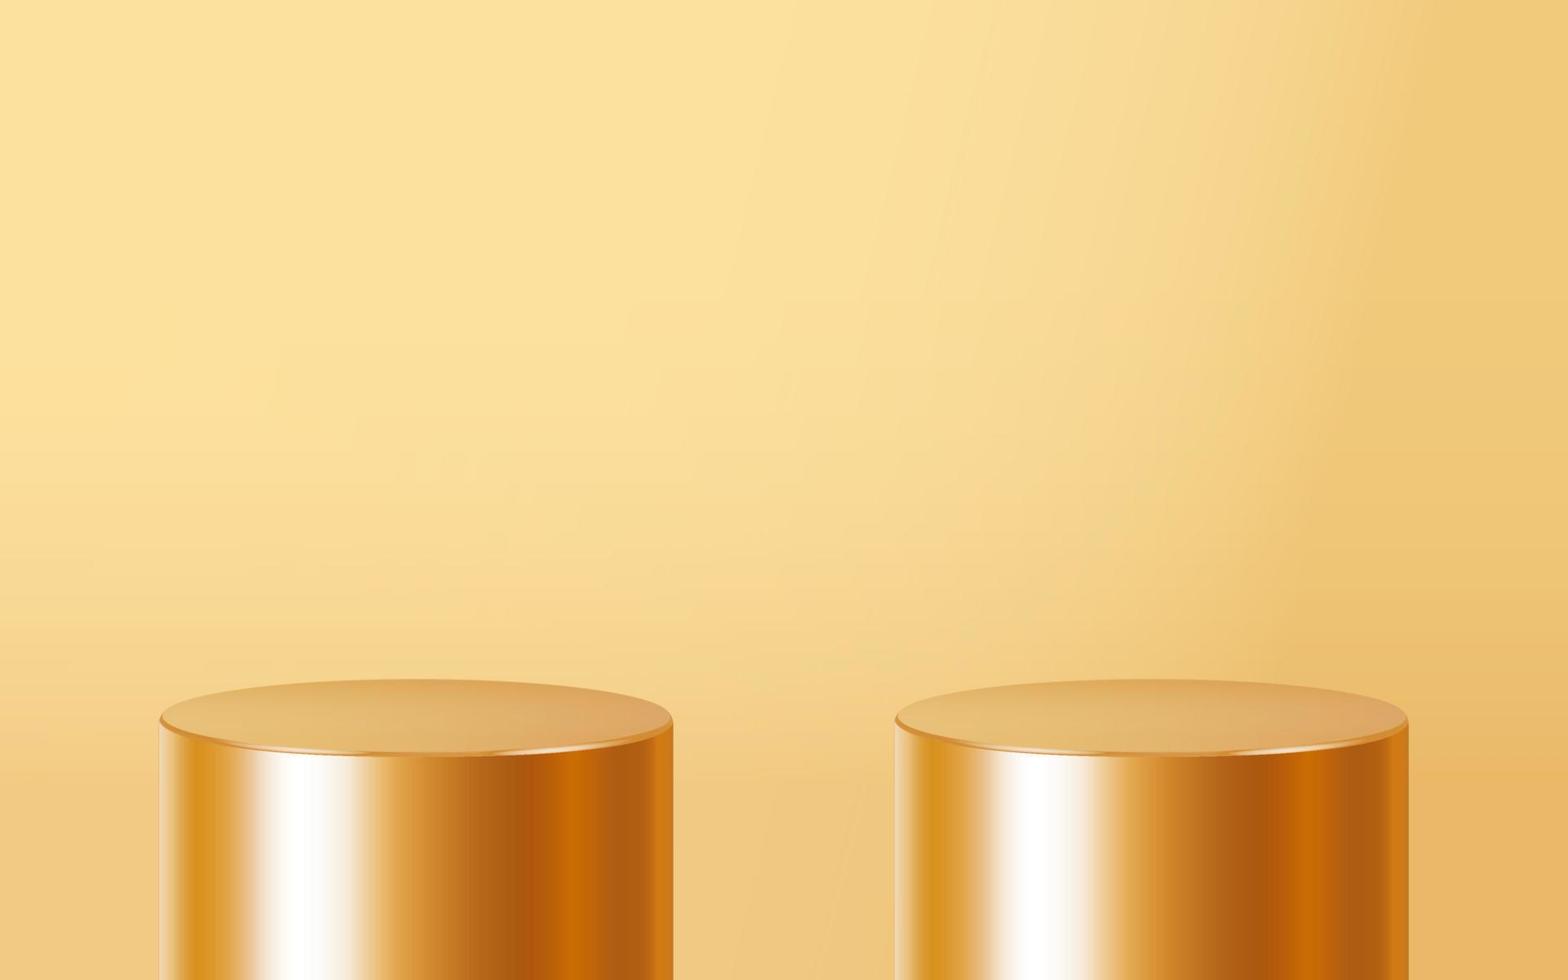 scena del podio realistica di due prodotti vuoti dorati isolata su fondo oro. forma rotonda metallica geometrica per il marchio del prodotto. scena di simulazione del cilindro d'oro. sfondo di illustrazione vettoriale 3d